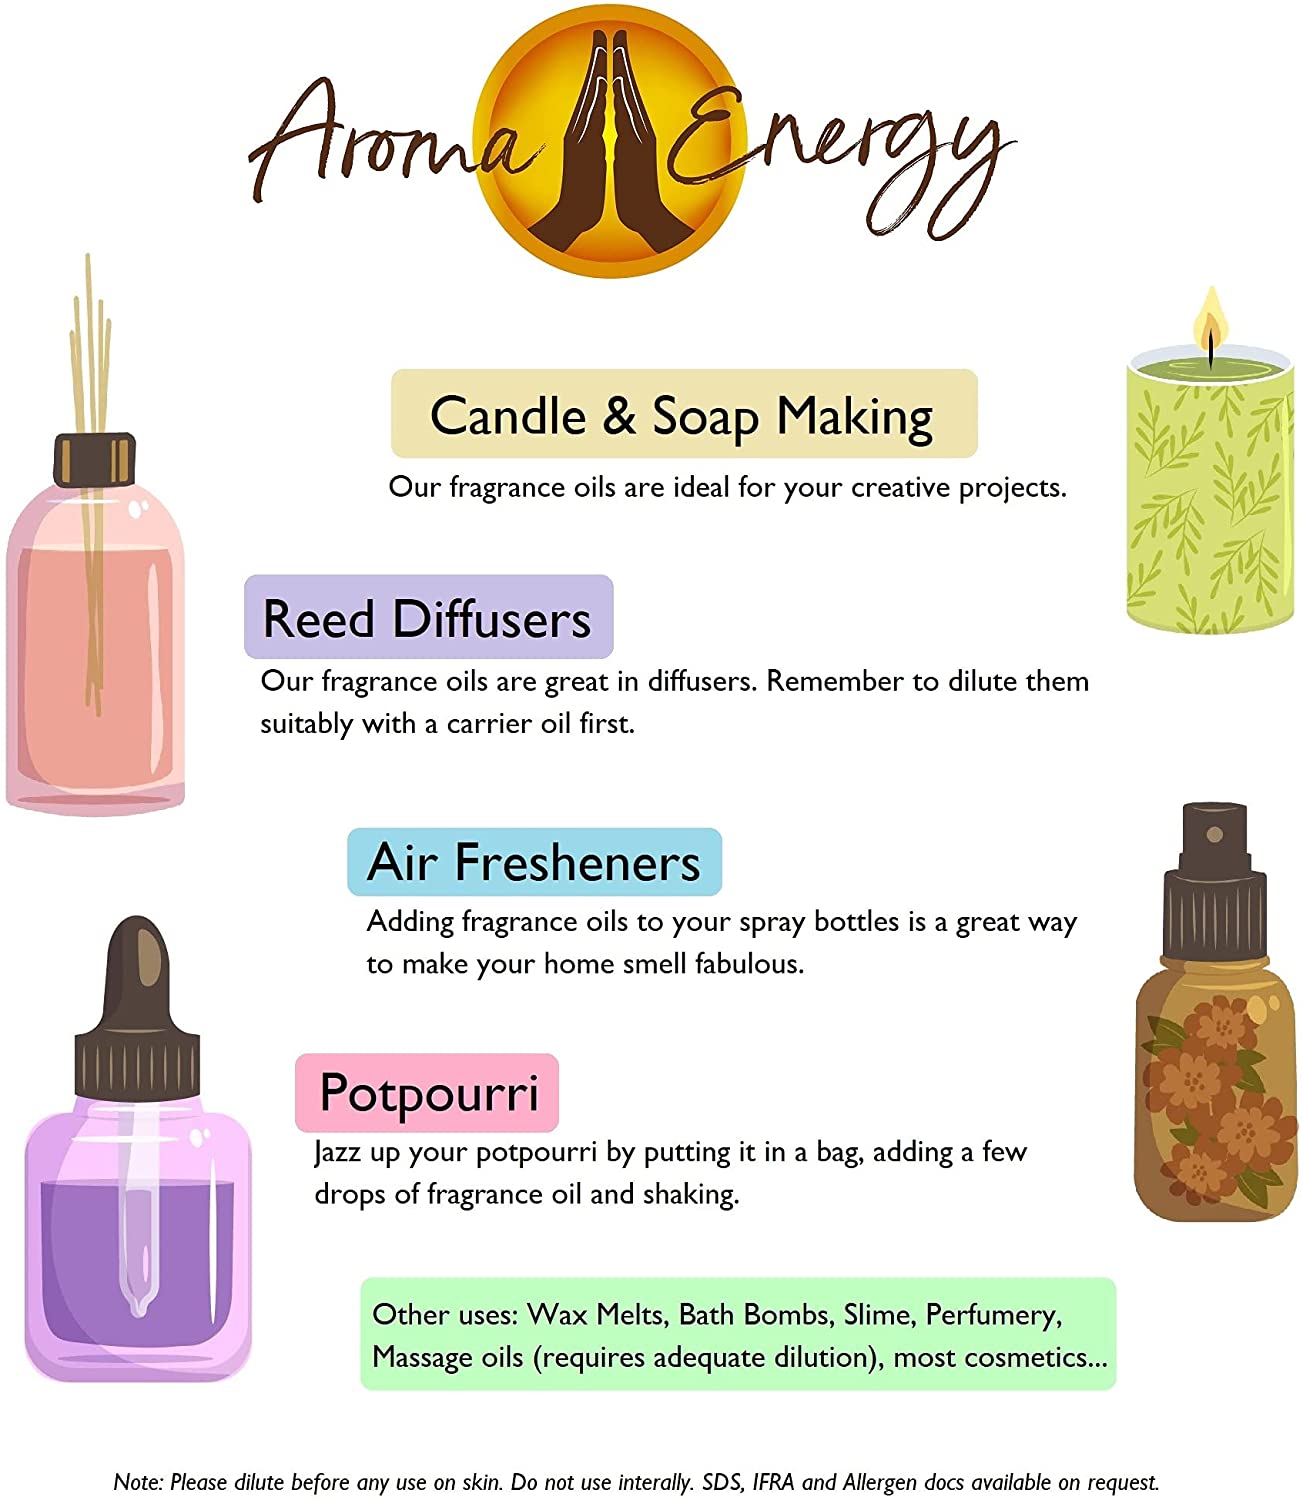 Lime, Basil & Mandarin Fragrance Oil - Aroma Energy